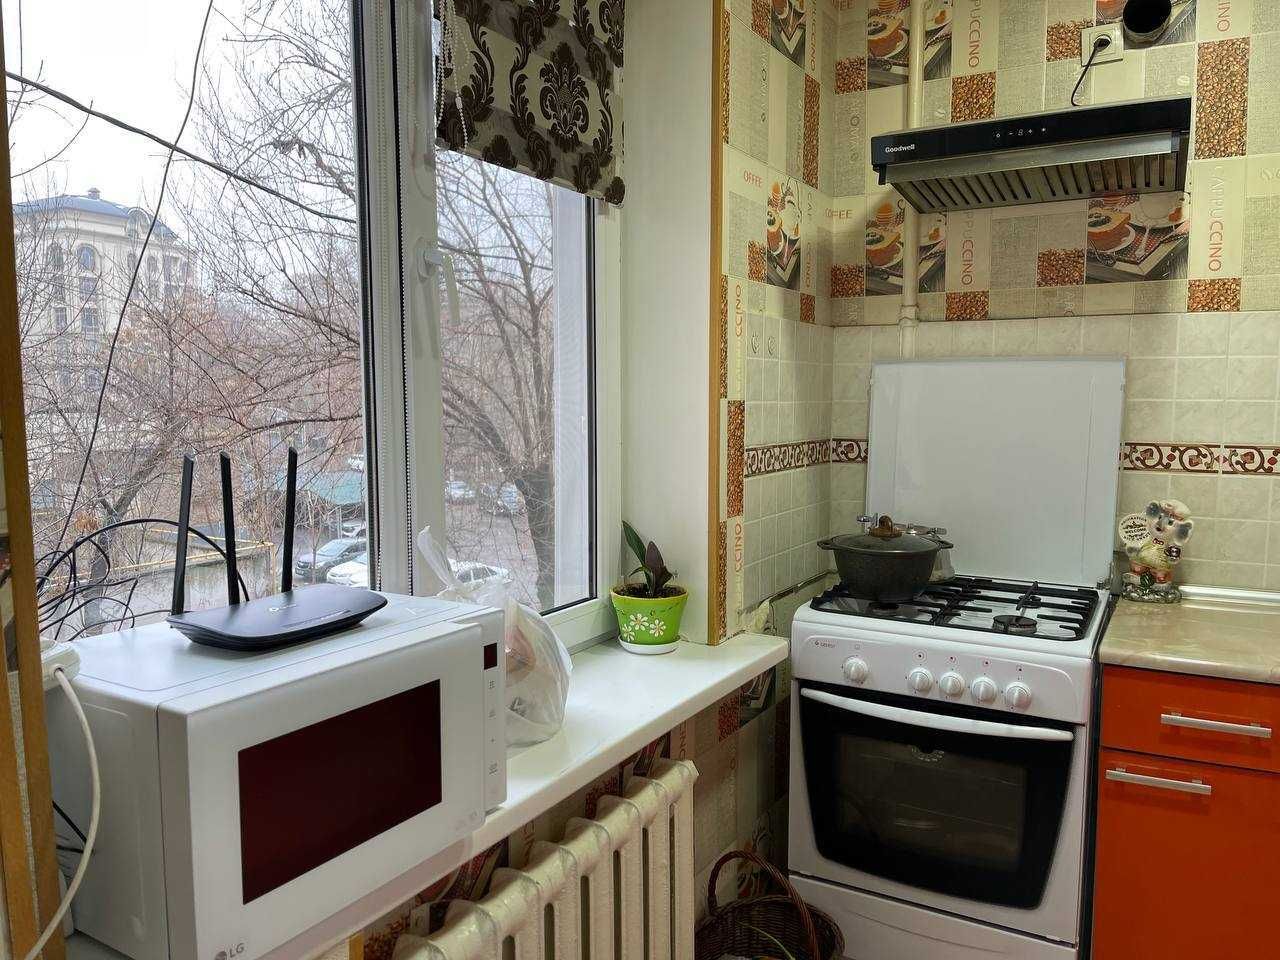 Продается квартира на Новомосковской 2/3/5 49 м² с хорошим ремонтом!